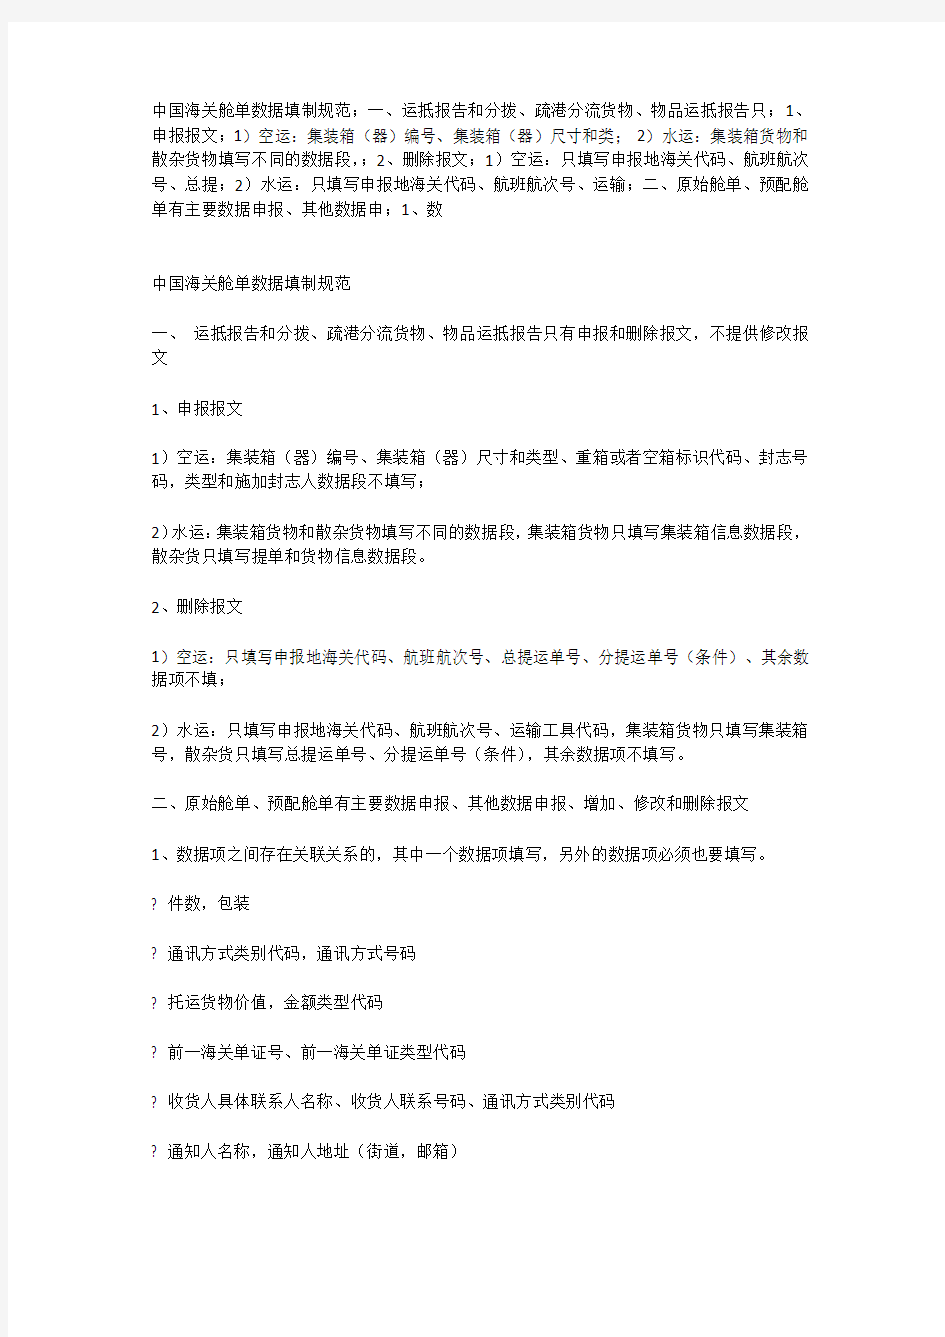 中国海关舱单数据填制规范